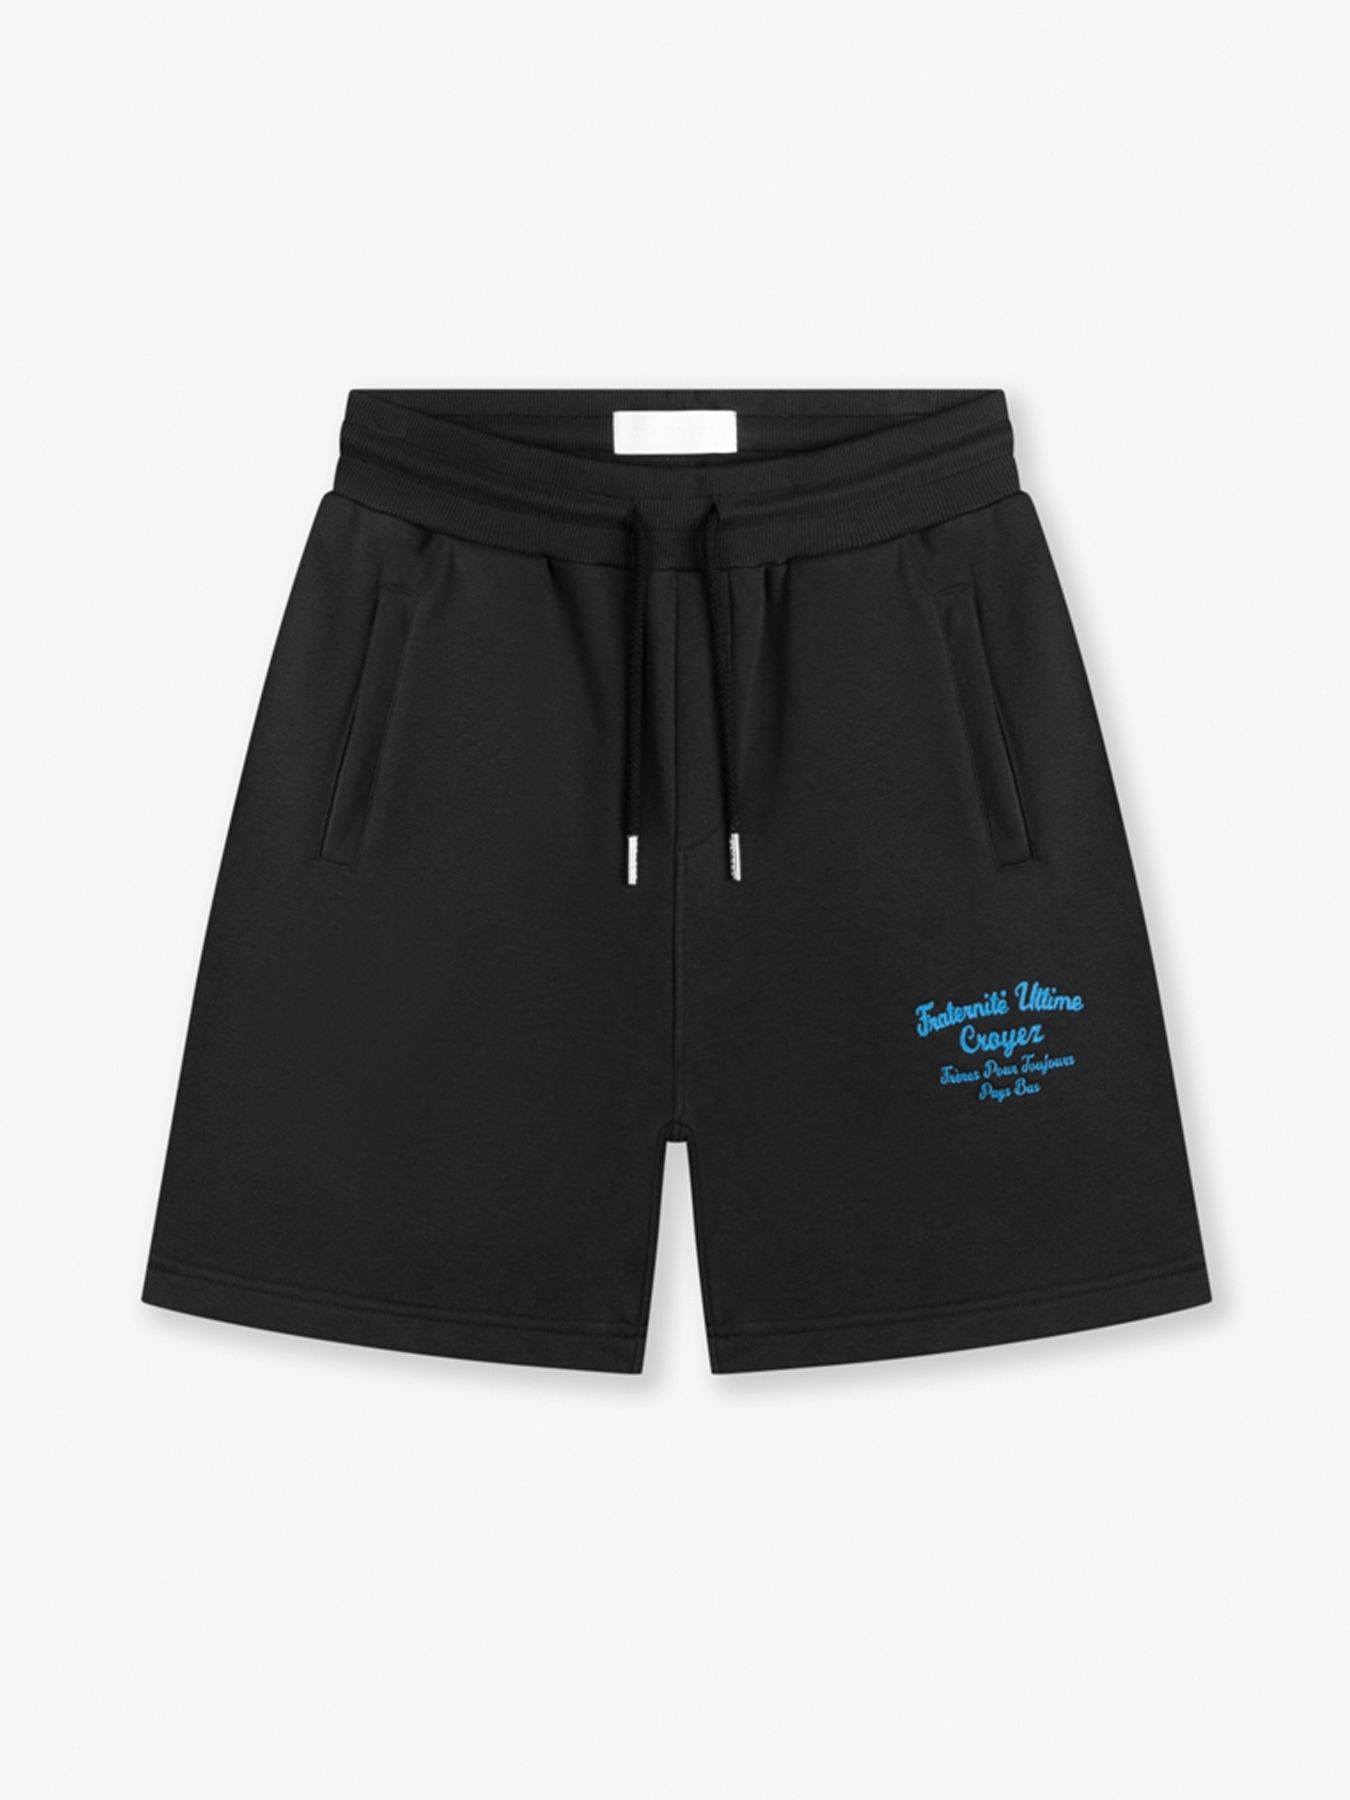 Fraternite shorts